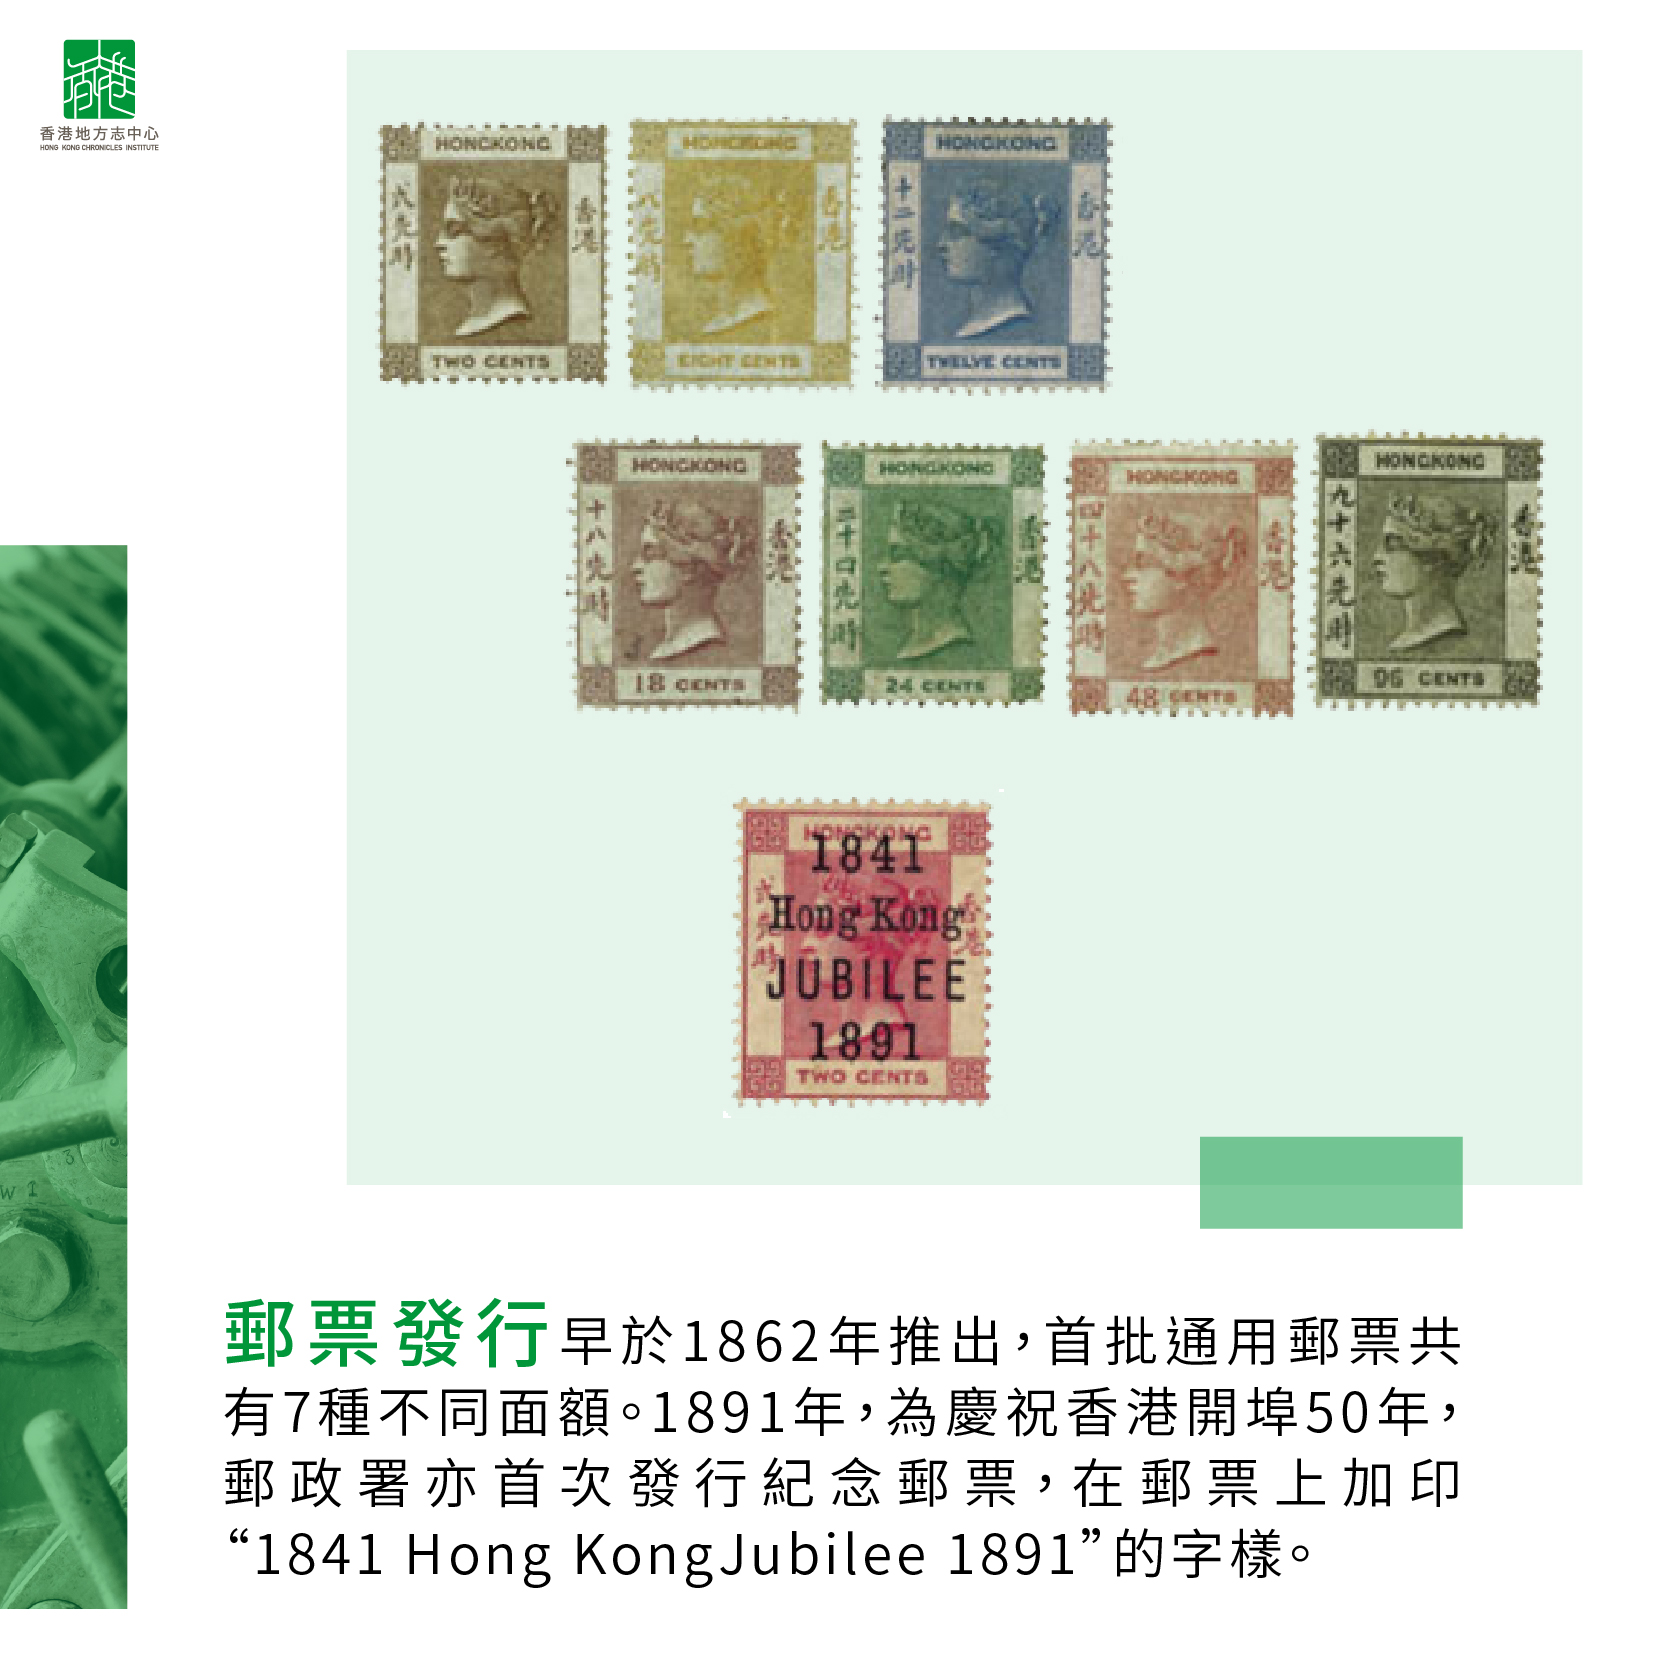 首次發行郵票 首枚紀念郵票